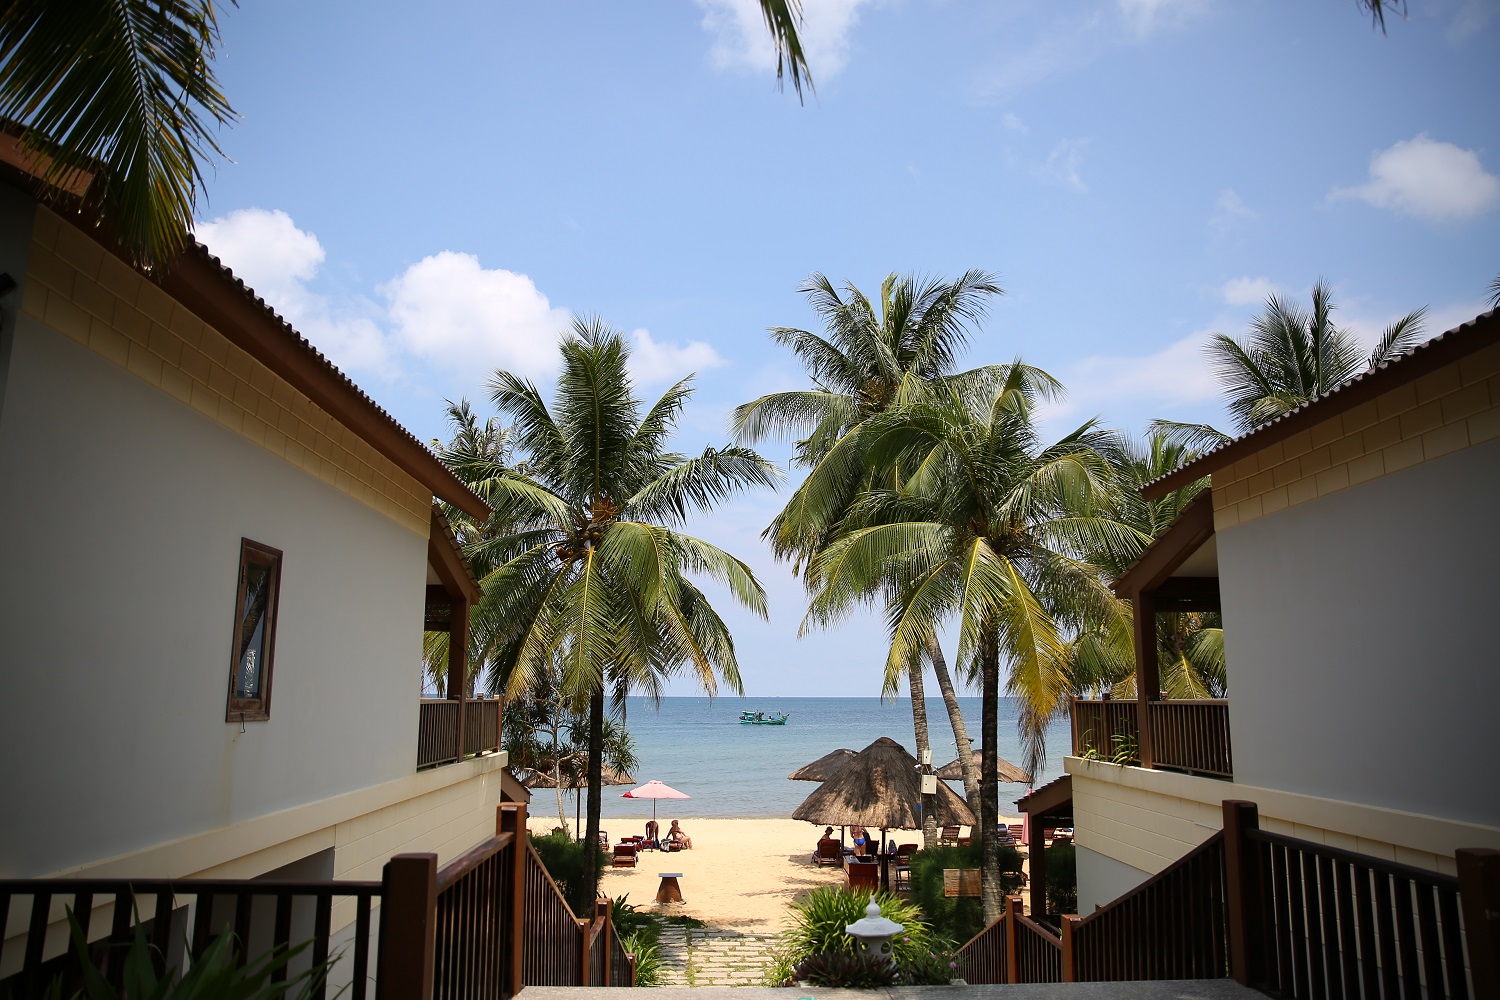 Tropicana Resort Phú Quốc - Khu nghỉ dưỡng 3 sao trải rộng trên 2 ha vườn nhiệt đới 11